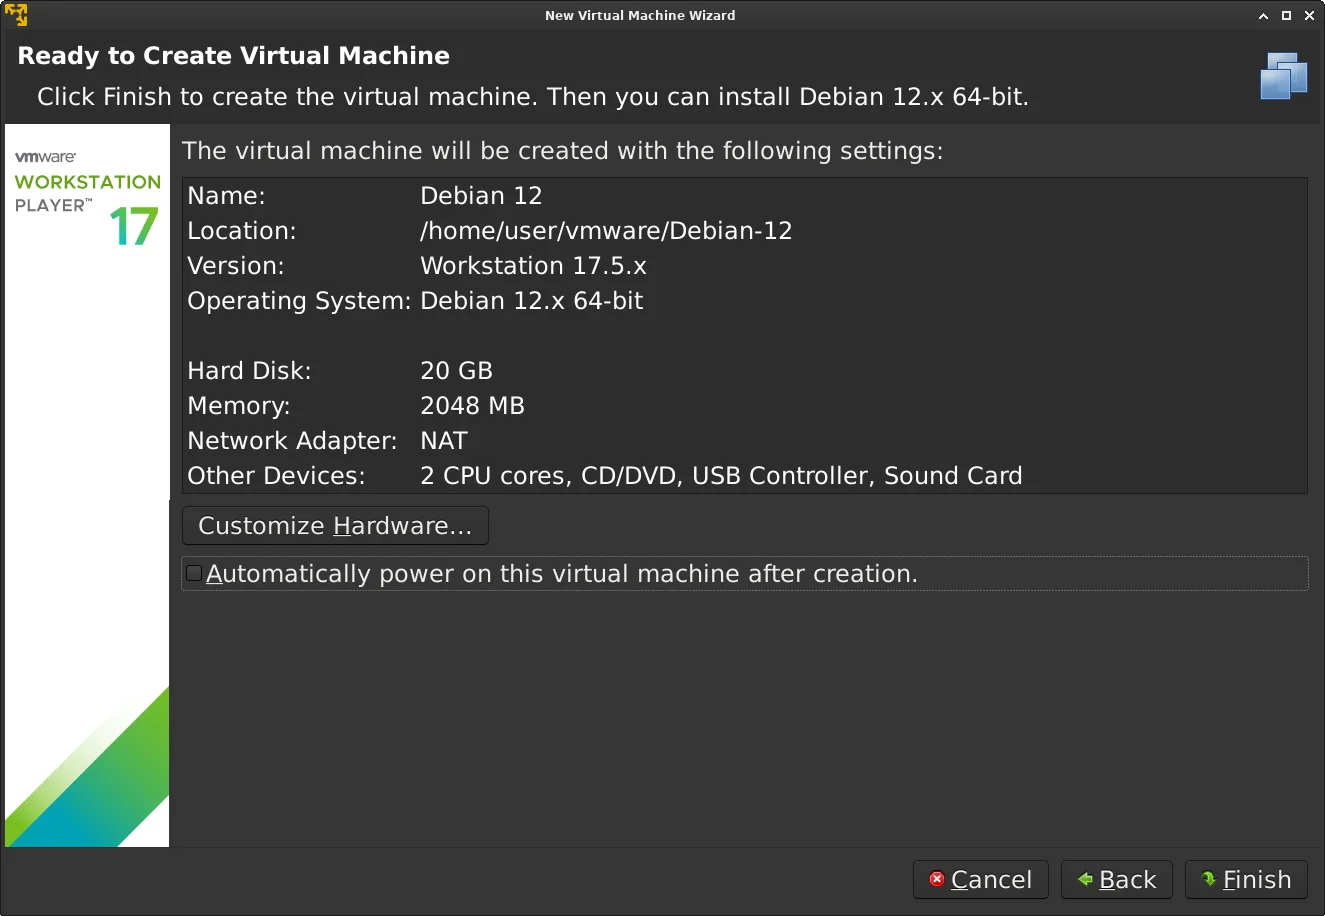 VMware Workstation 17 Player создание новый виртуальной машины Debian 12. Галочка автоматически запускать снята.